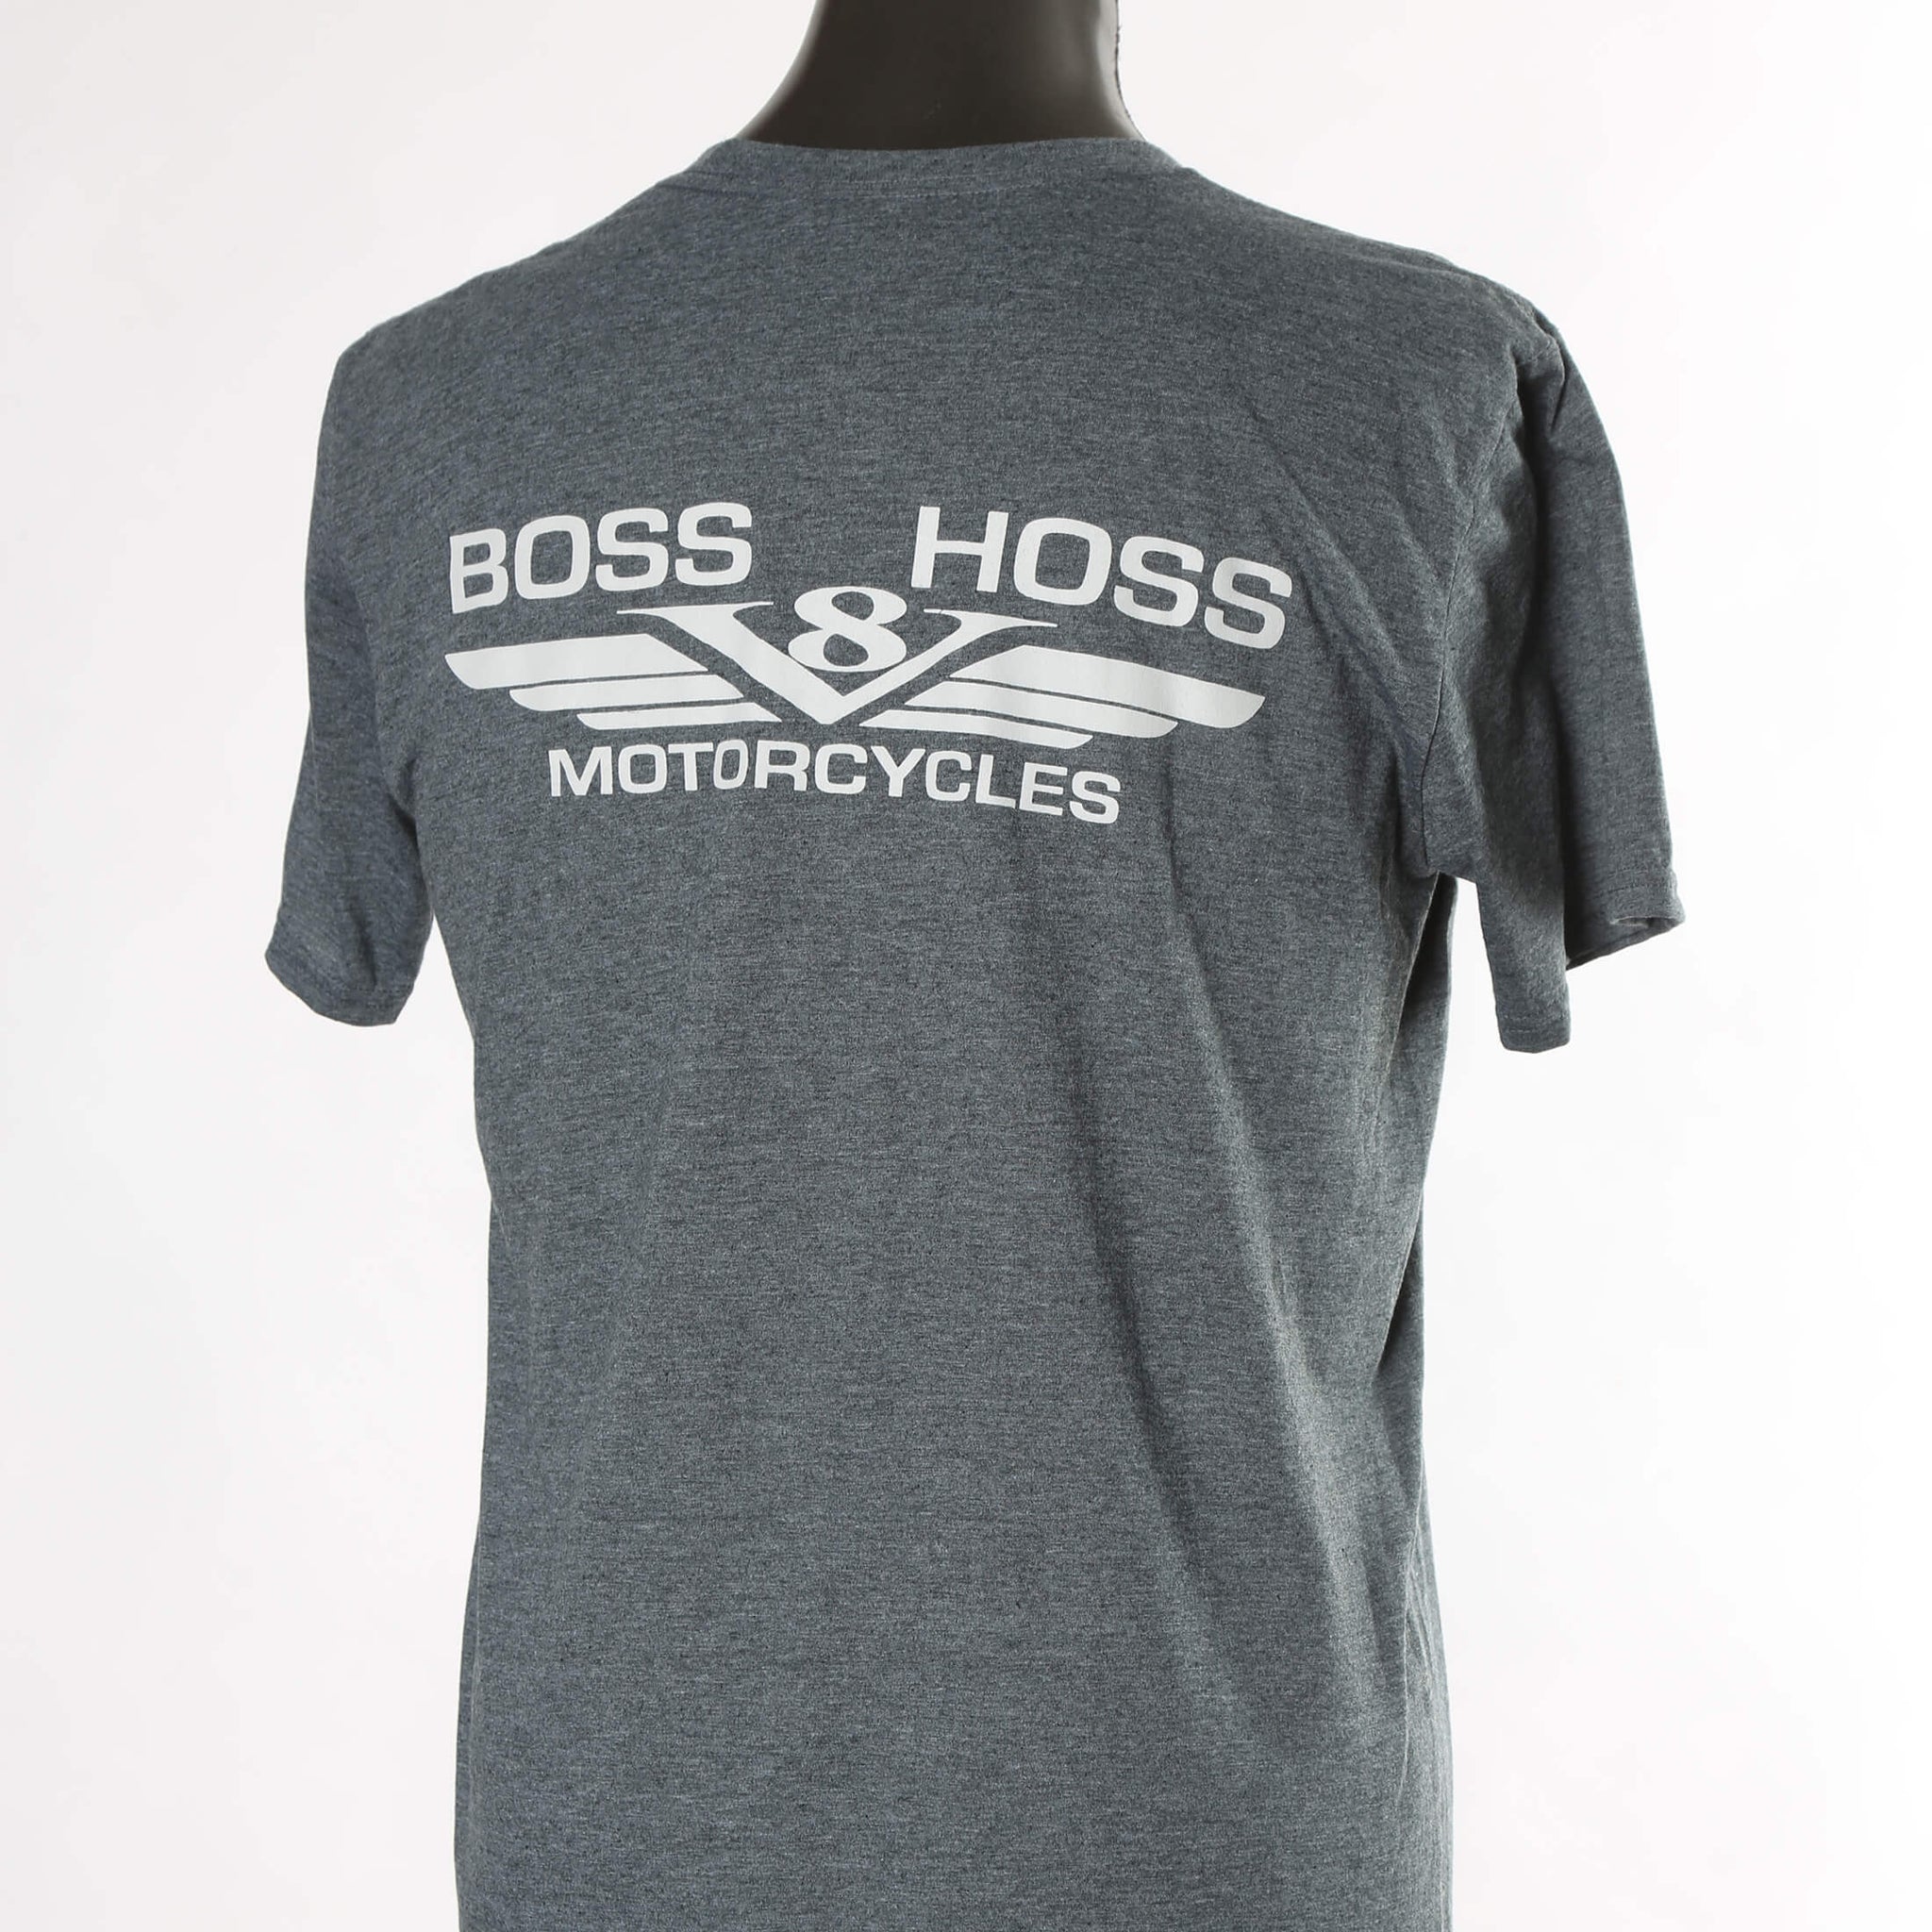 boss hoss shirts